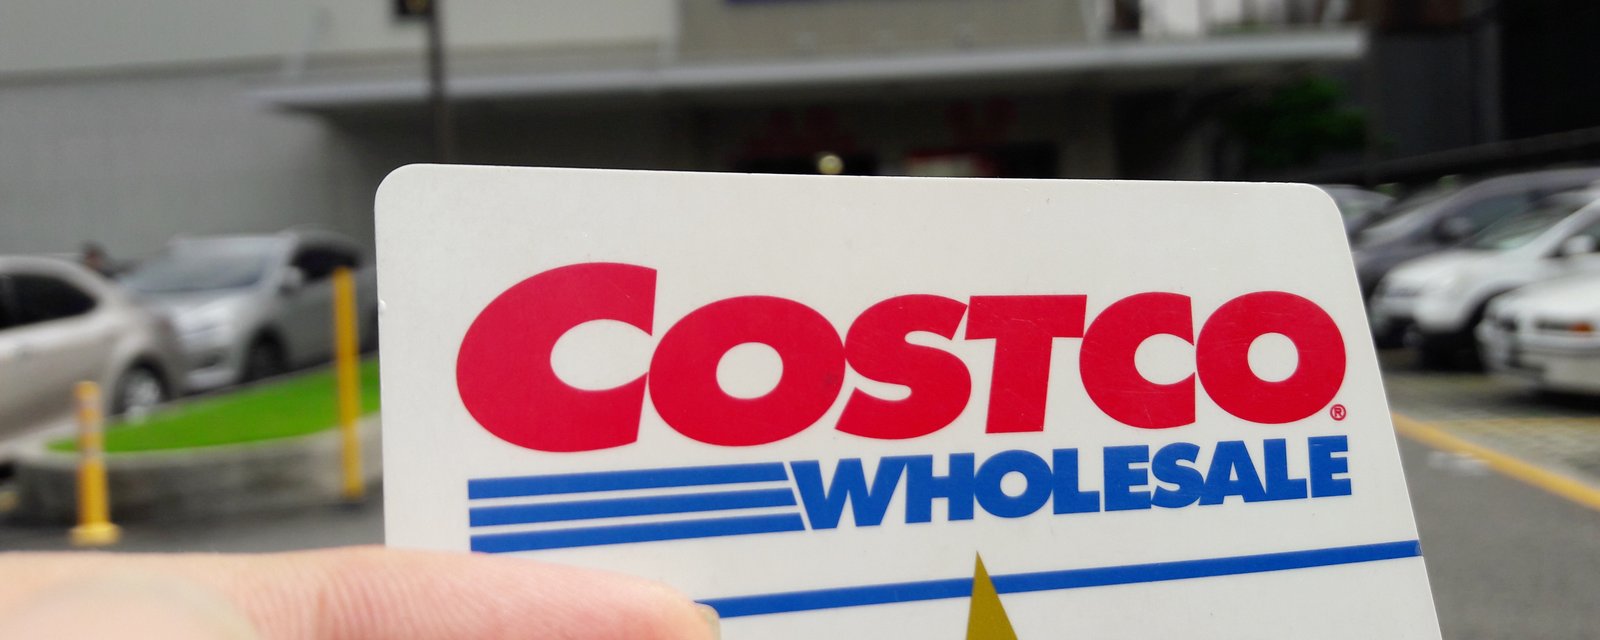 Le prix des cartes de membre chez Costco va bientôt augmenter